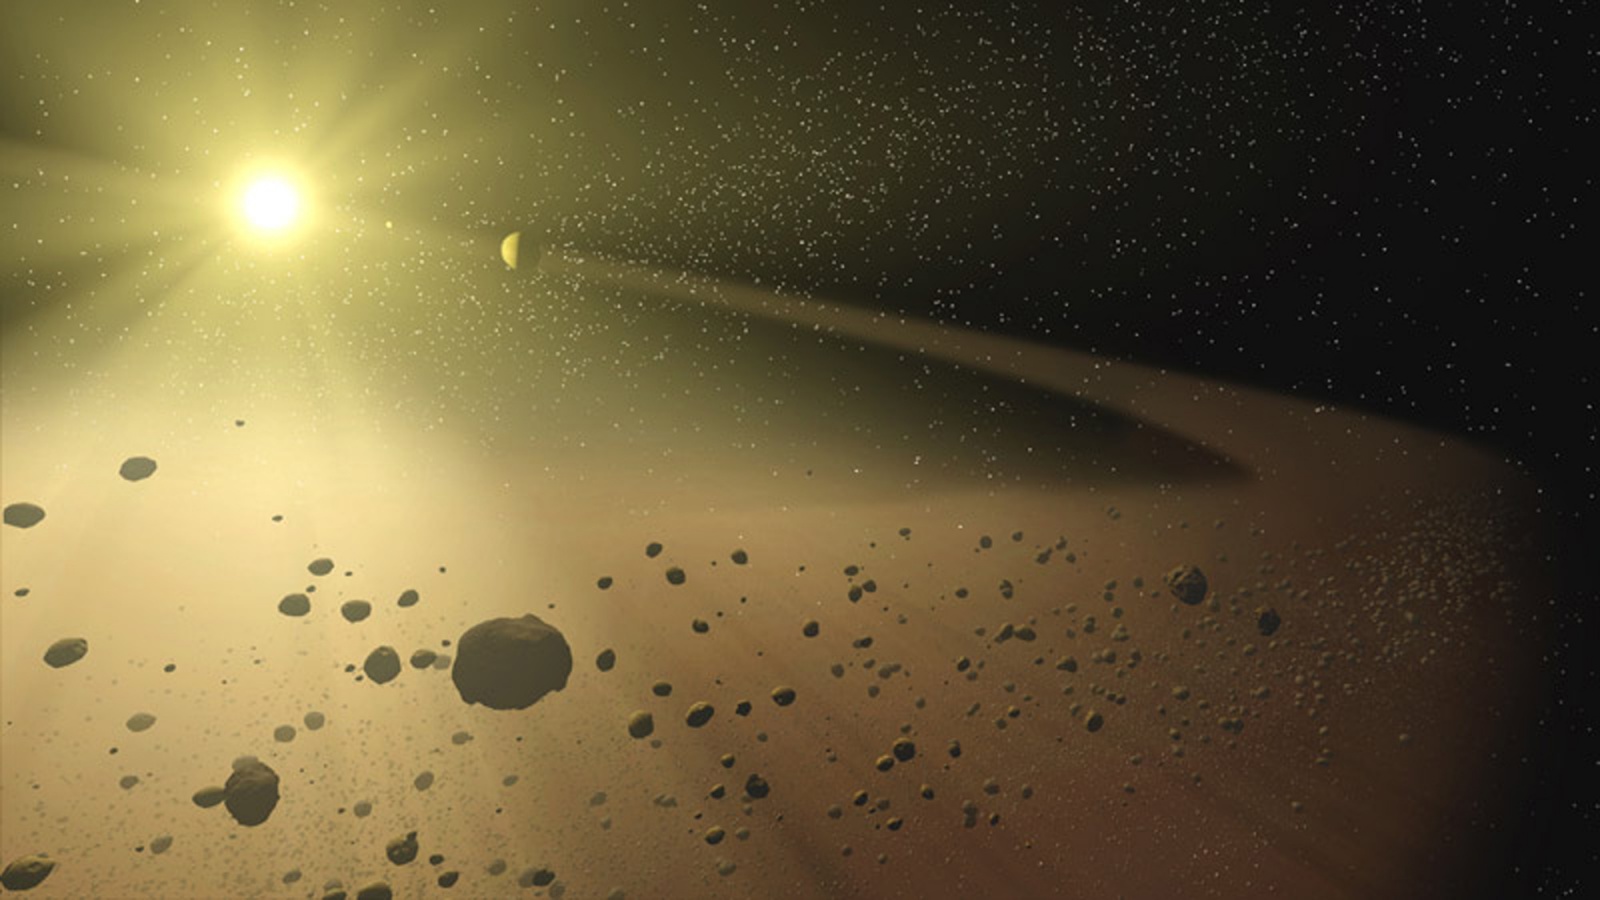 НАСА: вместо экспедиции на Венеру мы направим два зонда в пояс астероидов - 1